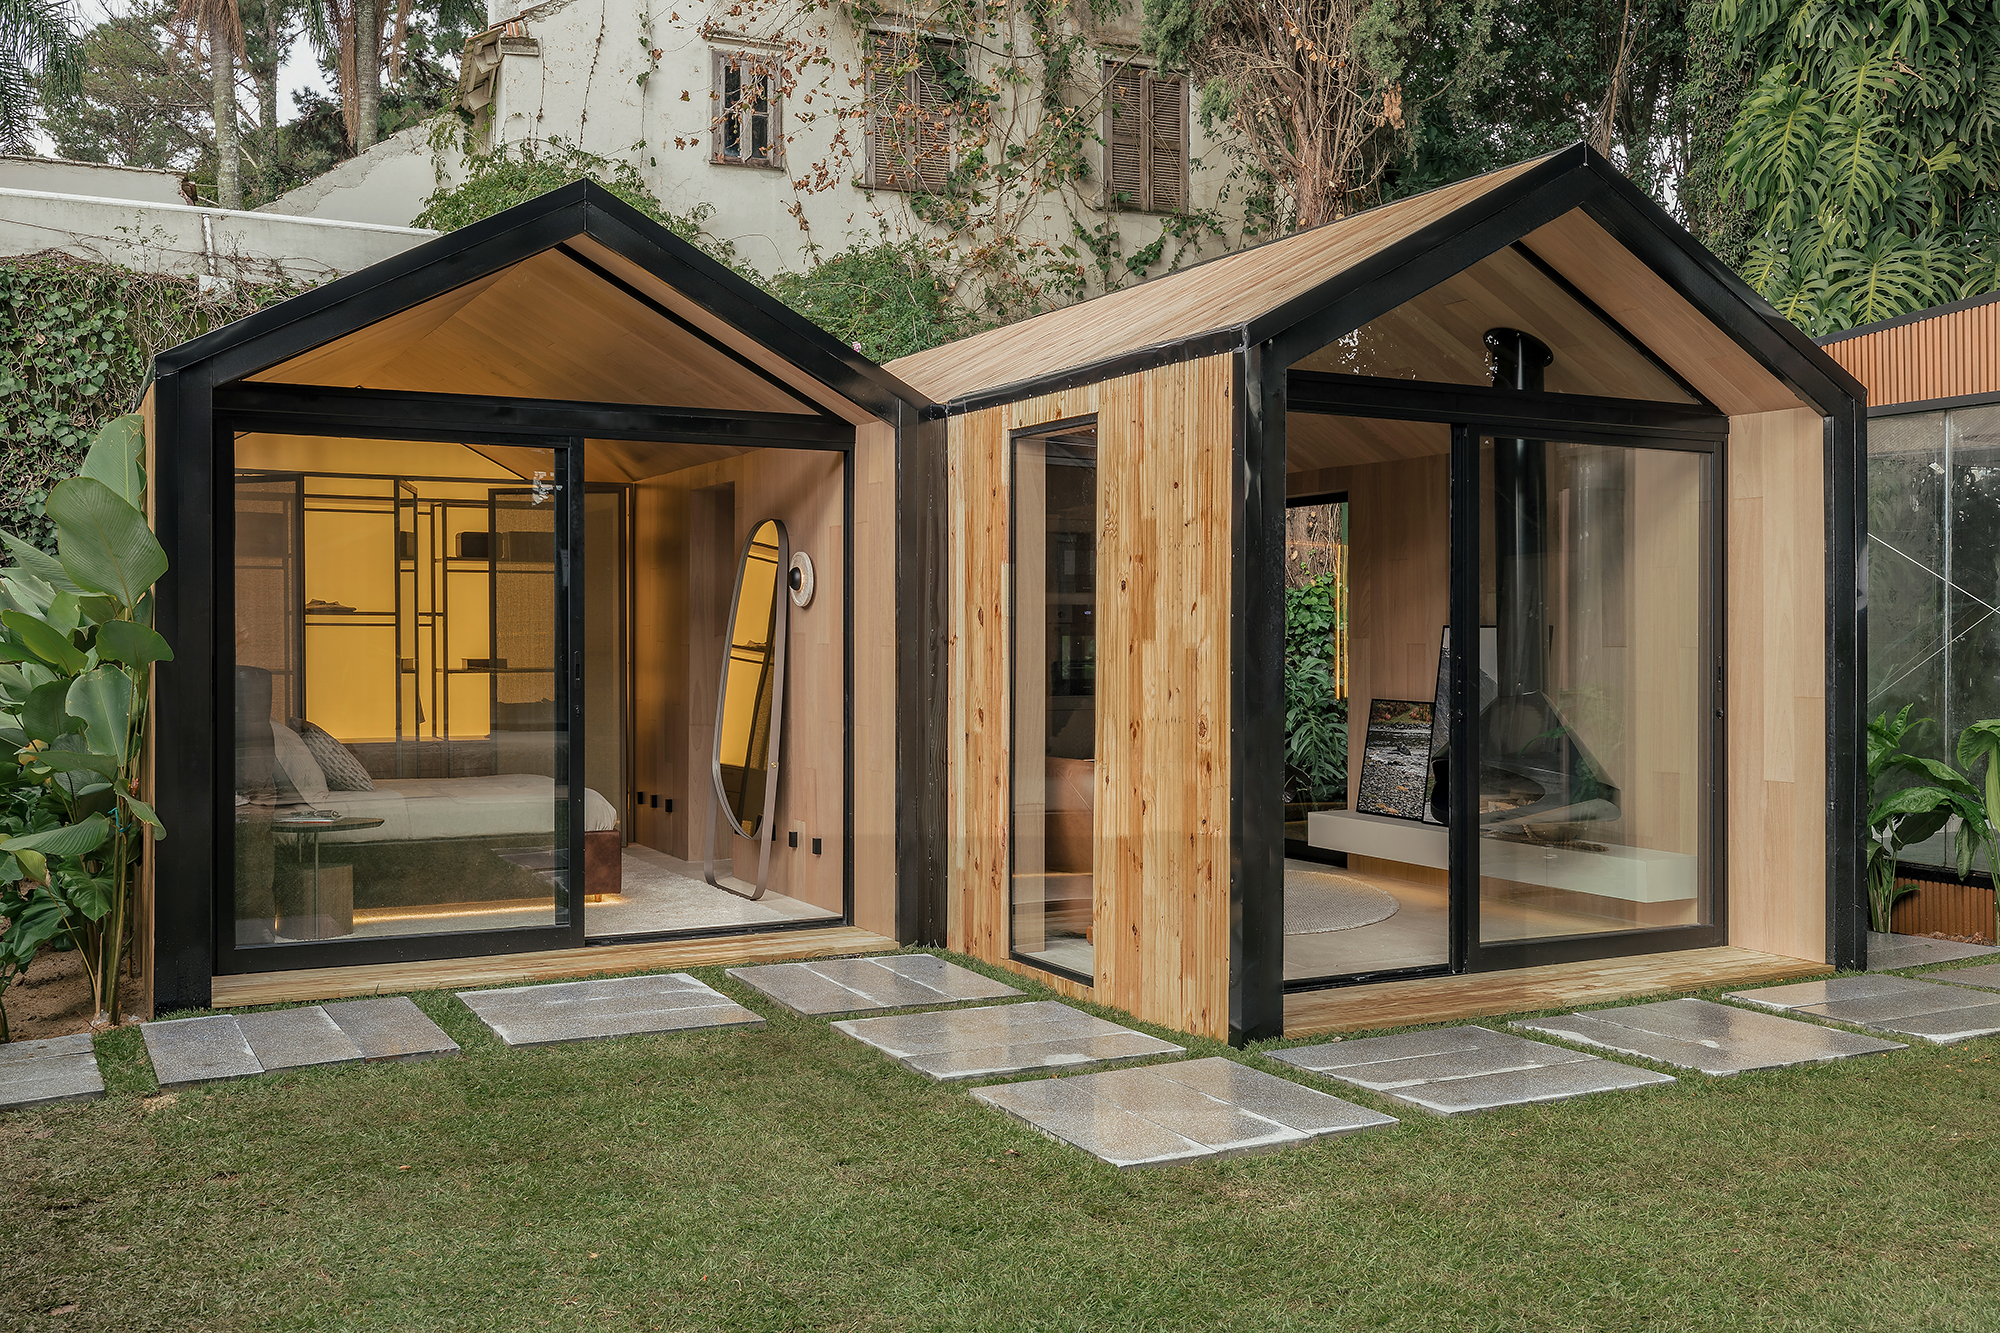 Projeto "Cottage de Serra", de Thiago Zoller e Rebeca Zanuthi, é vencedor na categoria Cumprimento de Prazo.